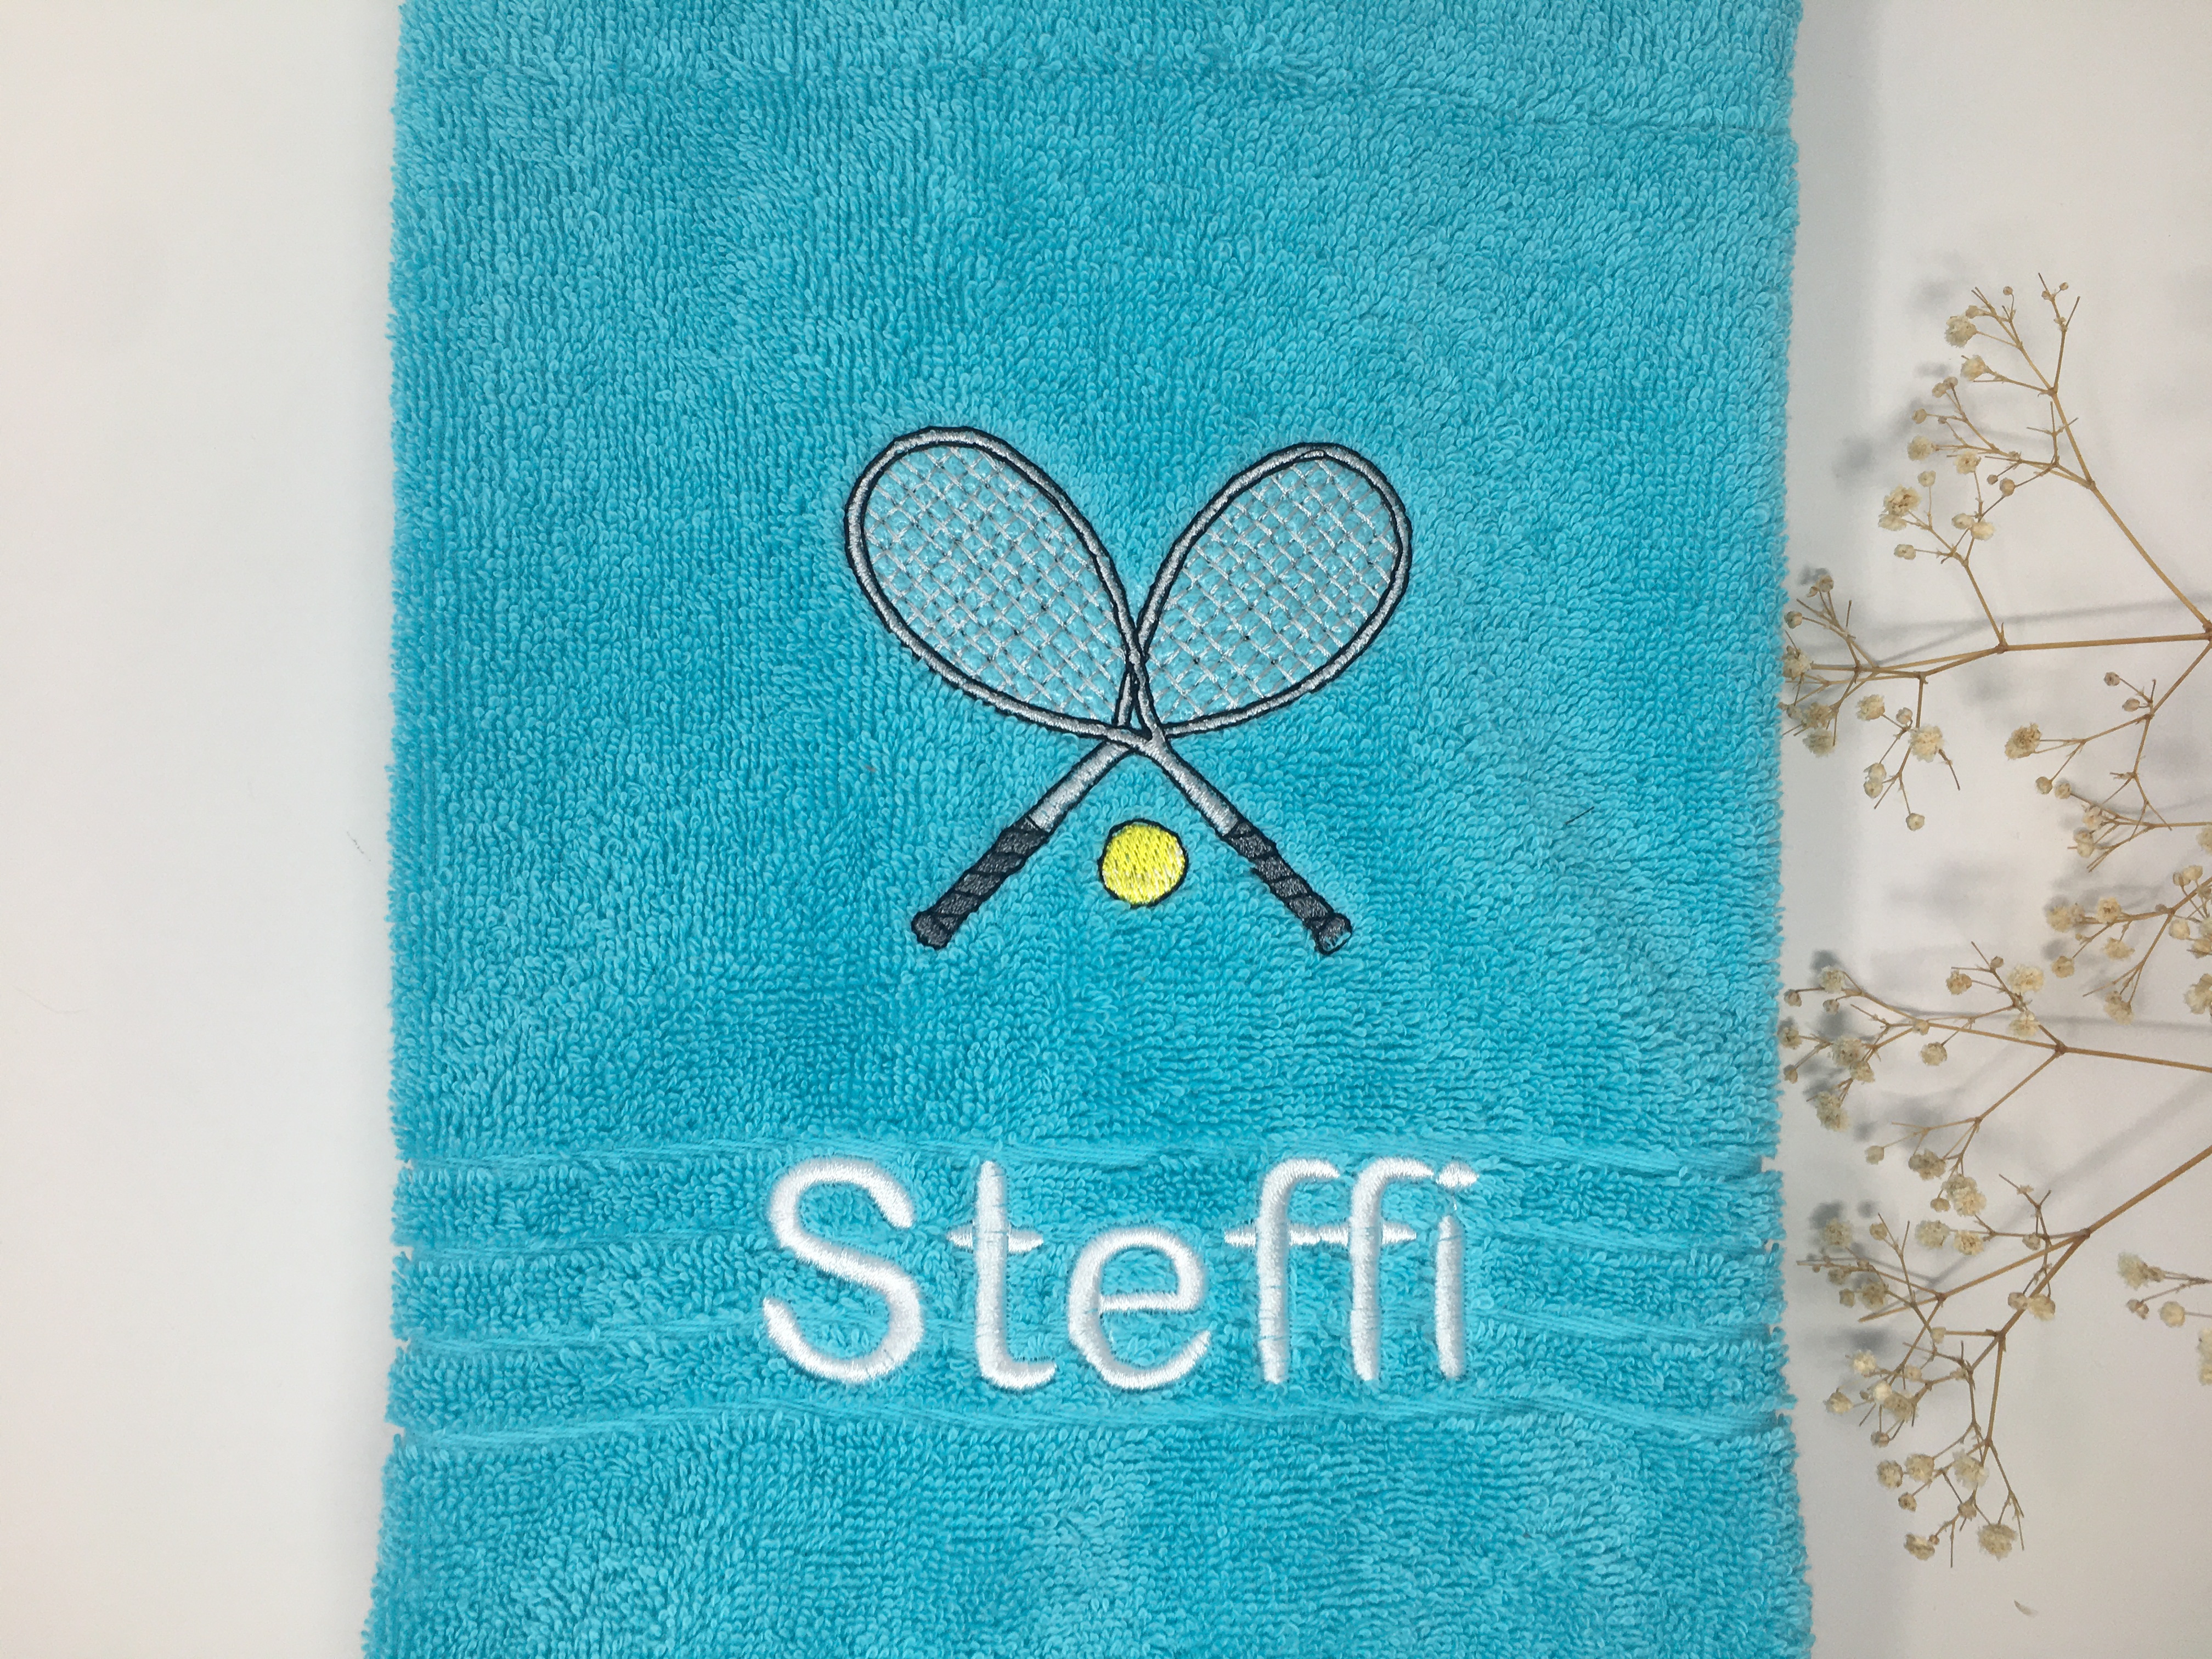 Tennis 08 Fitness Handtuch Duschtuch Stickerei & Personalisierung Super Qualität 